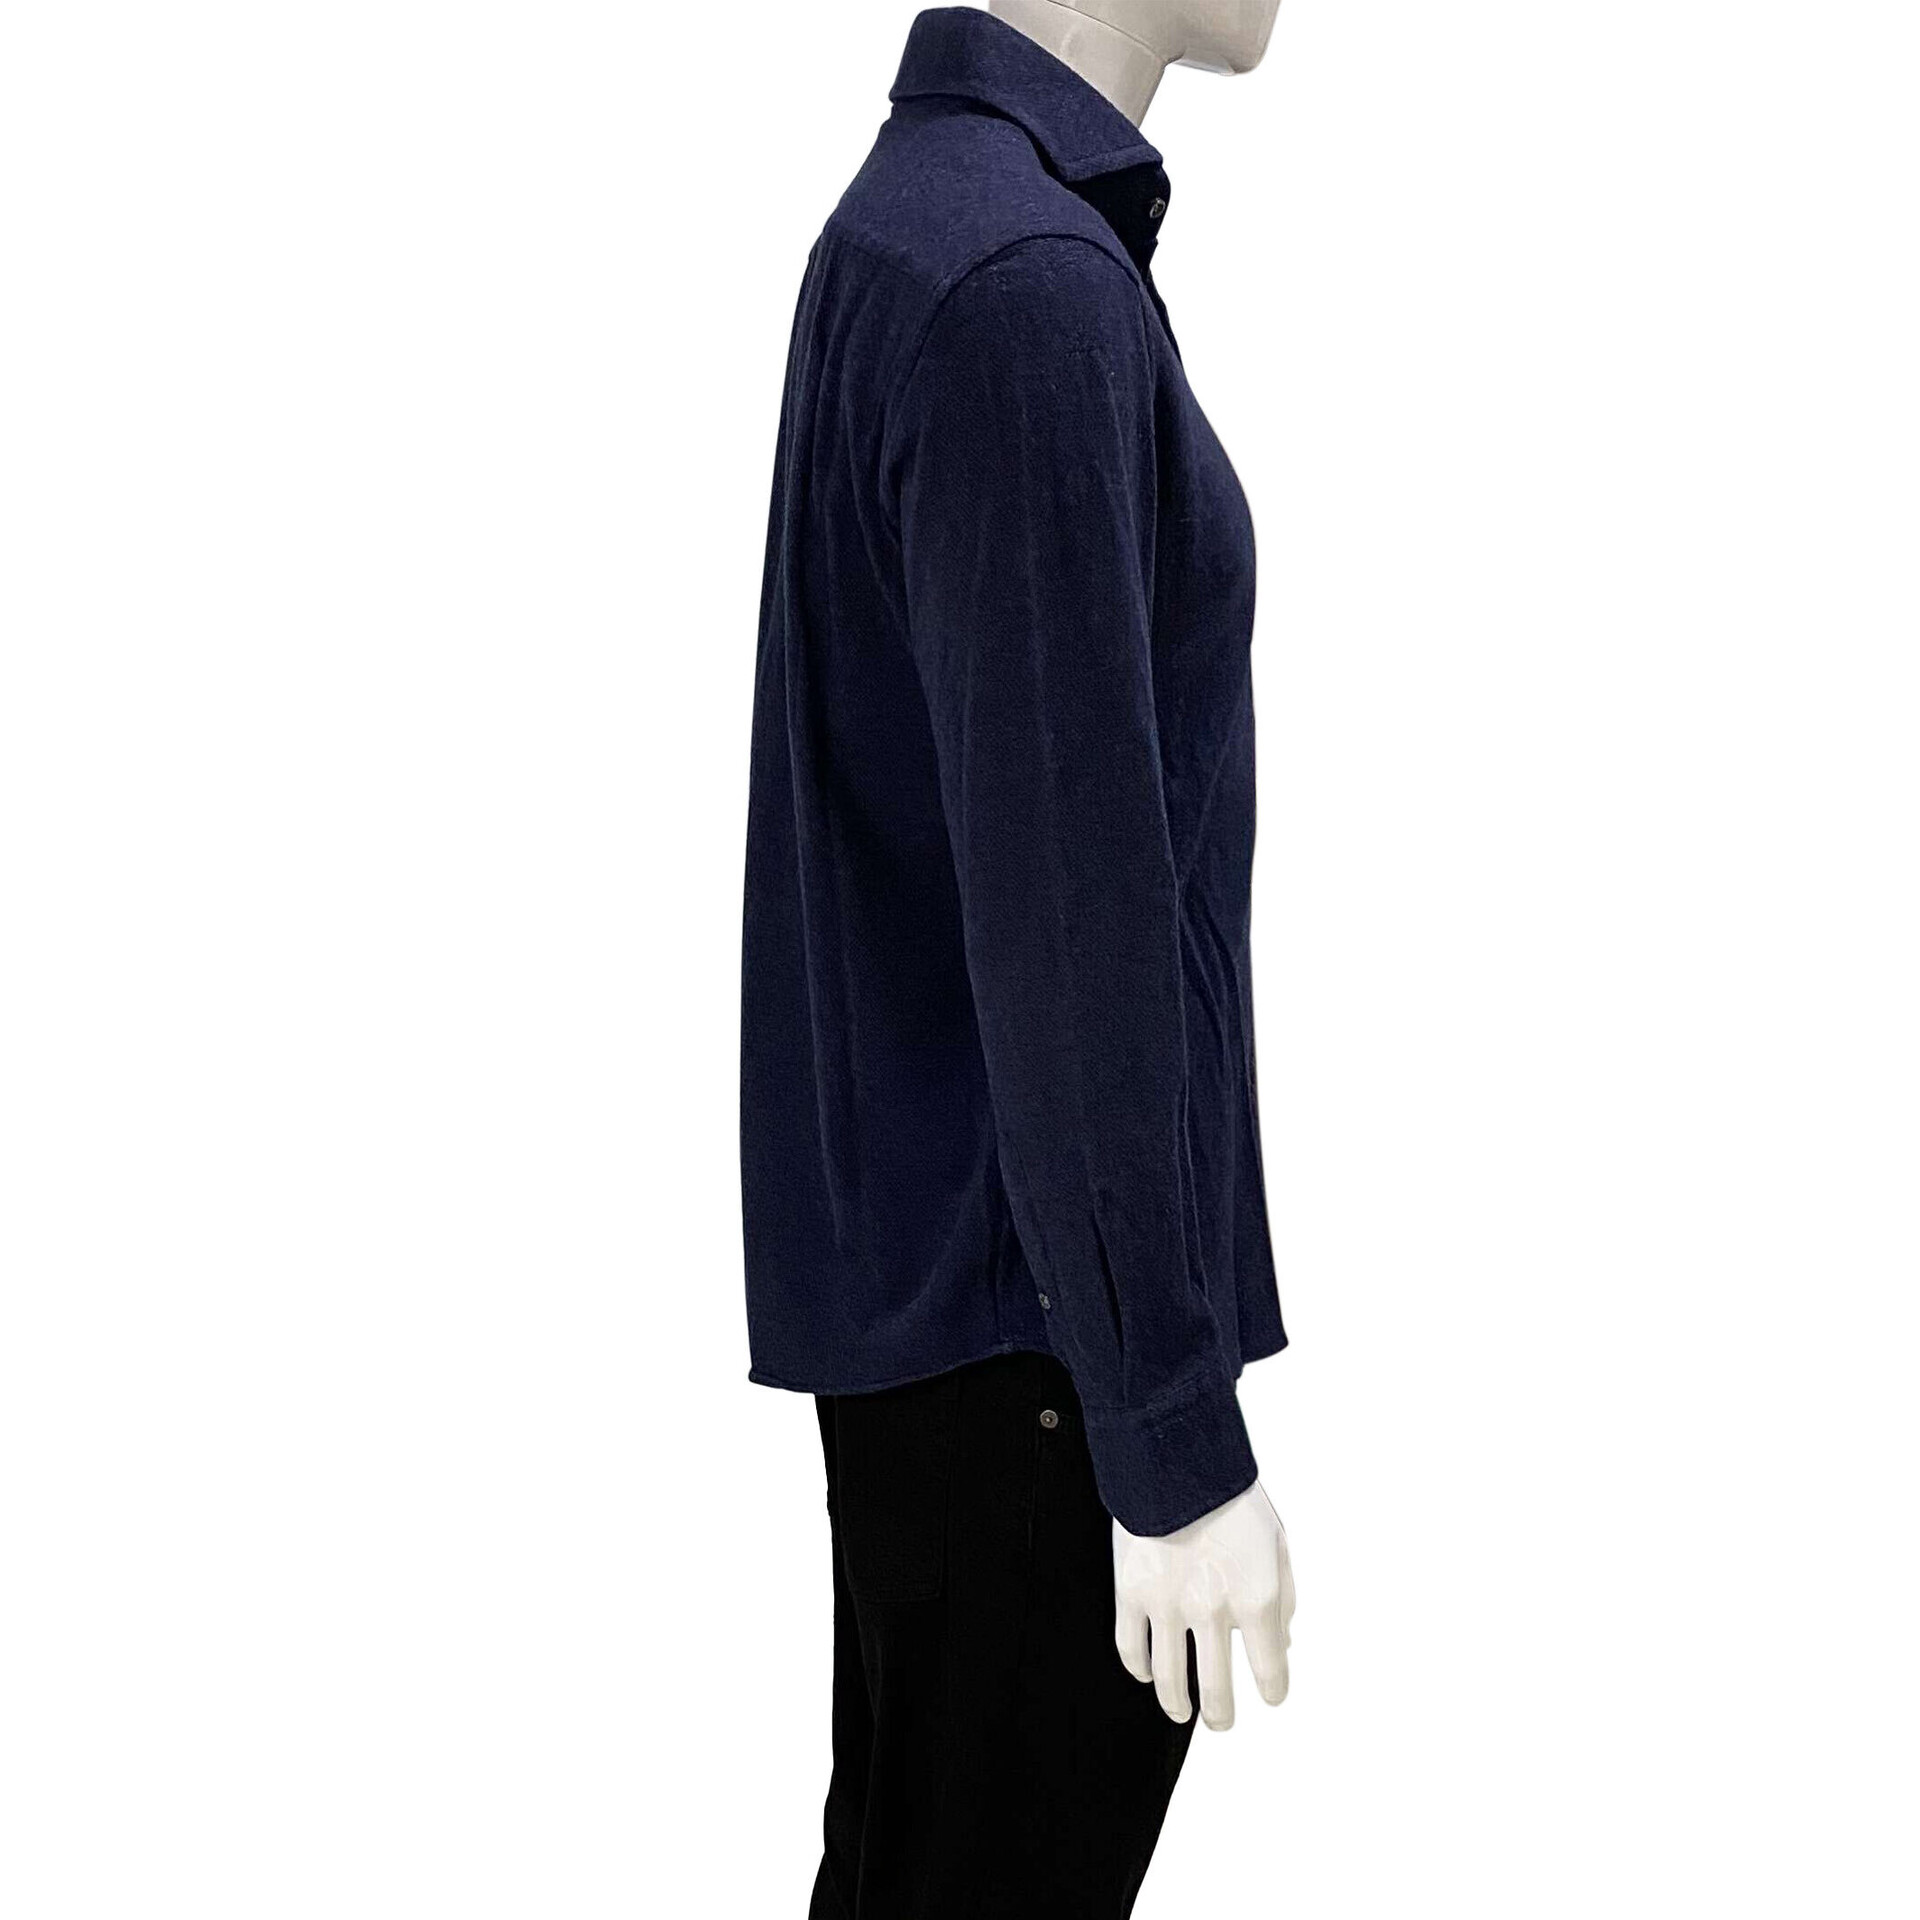 Camisa Hugo Boss Slim Fit Lã Azul Marinho